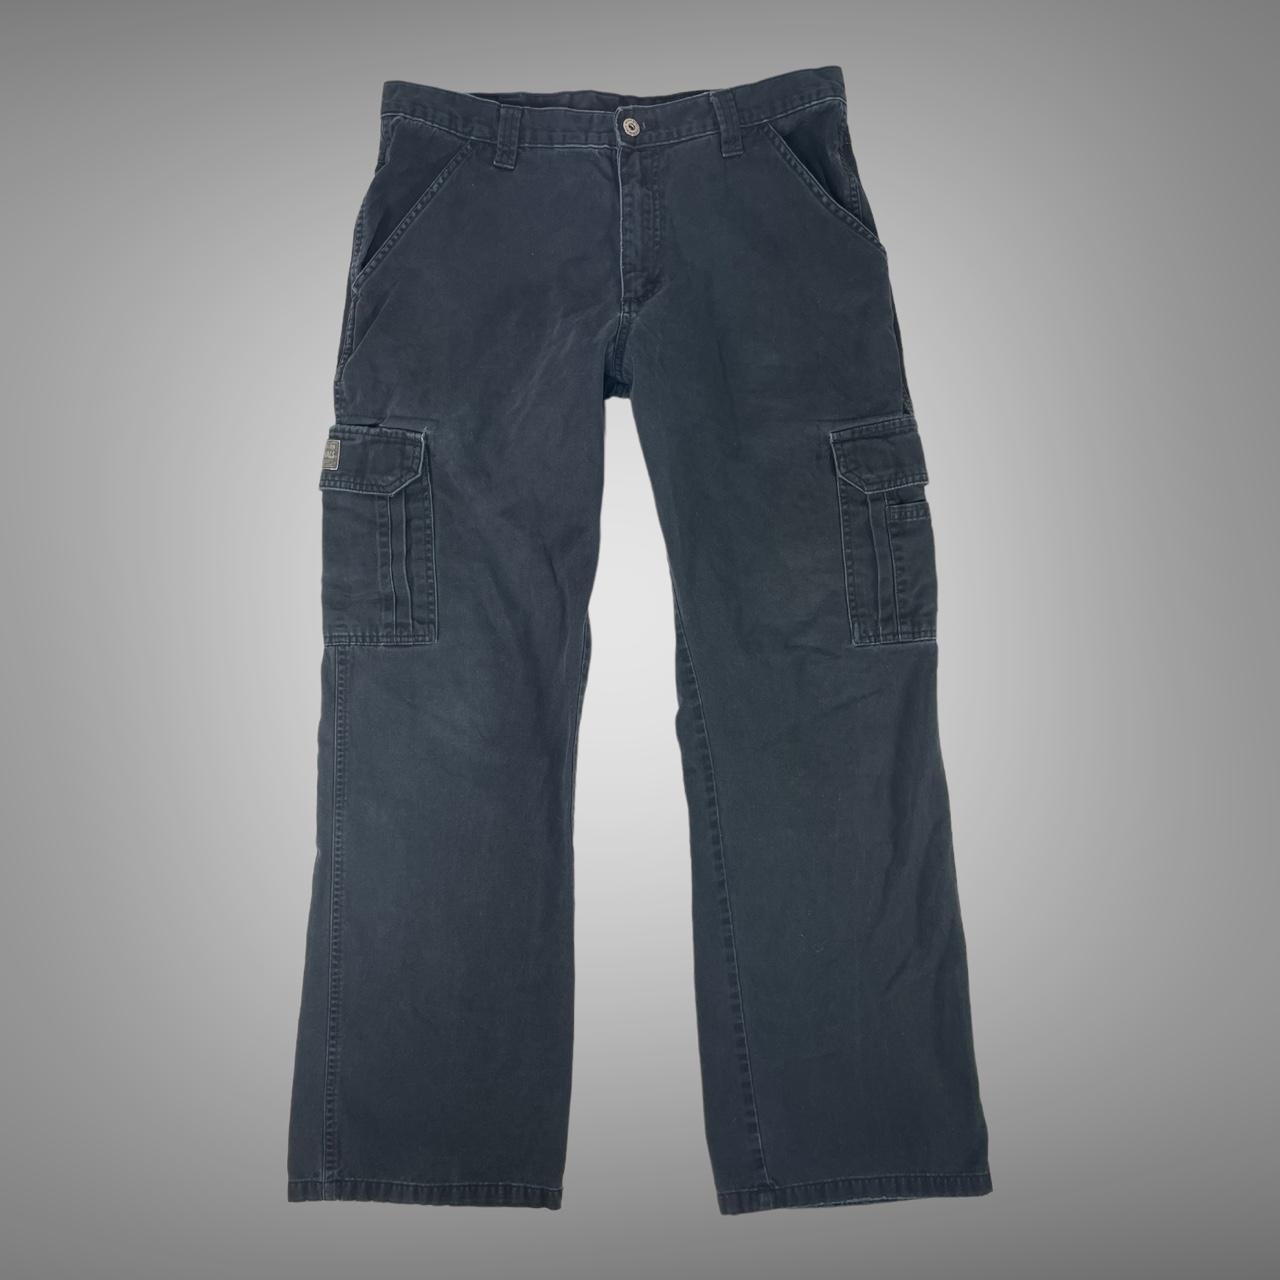 Vintage 90s wrangler 6 pocket cargo pants Mens size... - Depop